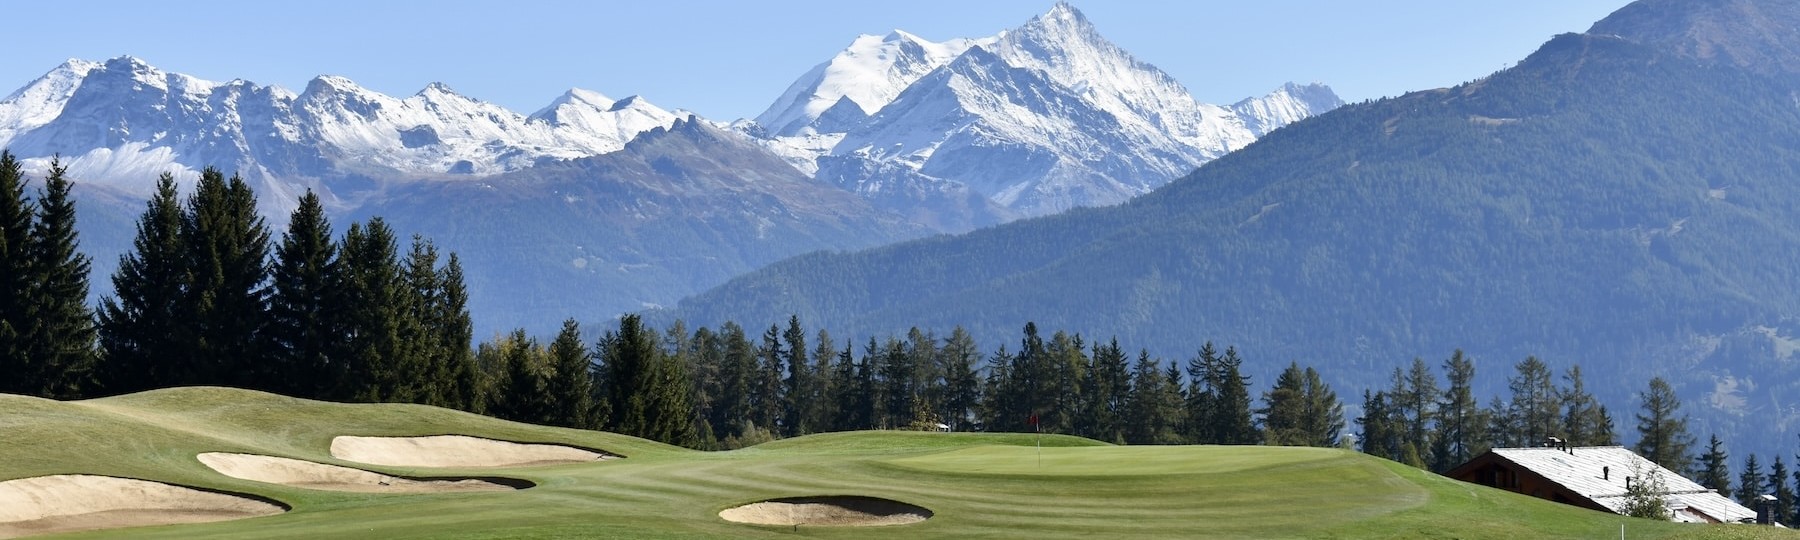 FP Events | Golf Crans Montant/Julien Ruffier Lanche, golf de montagne avec sommets enneigés